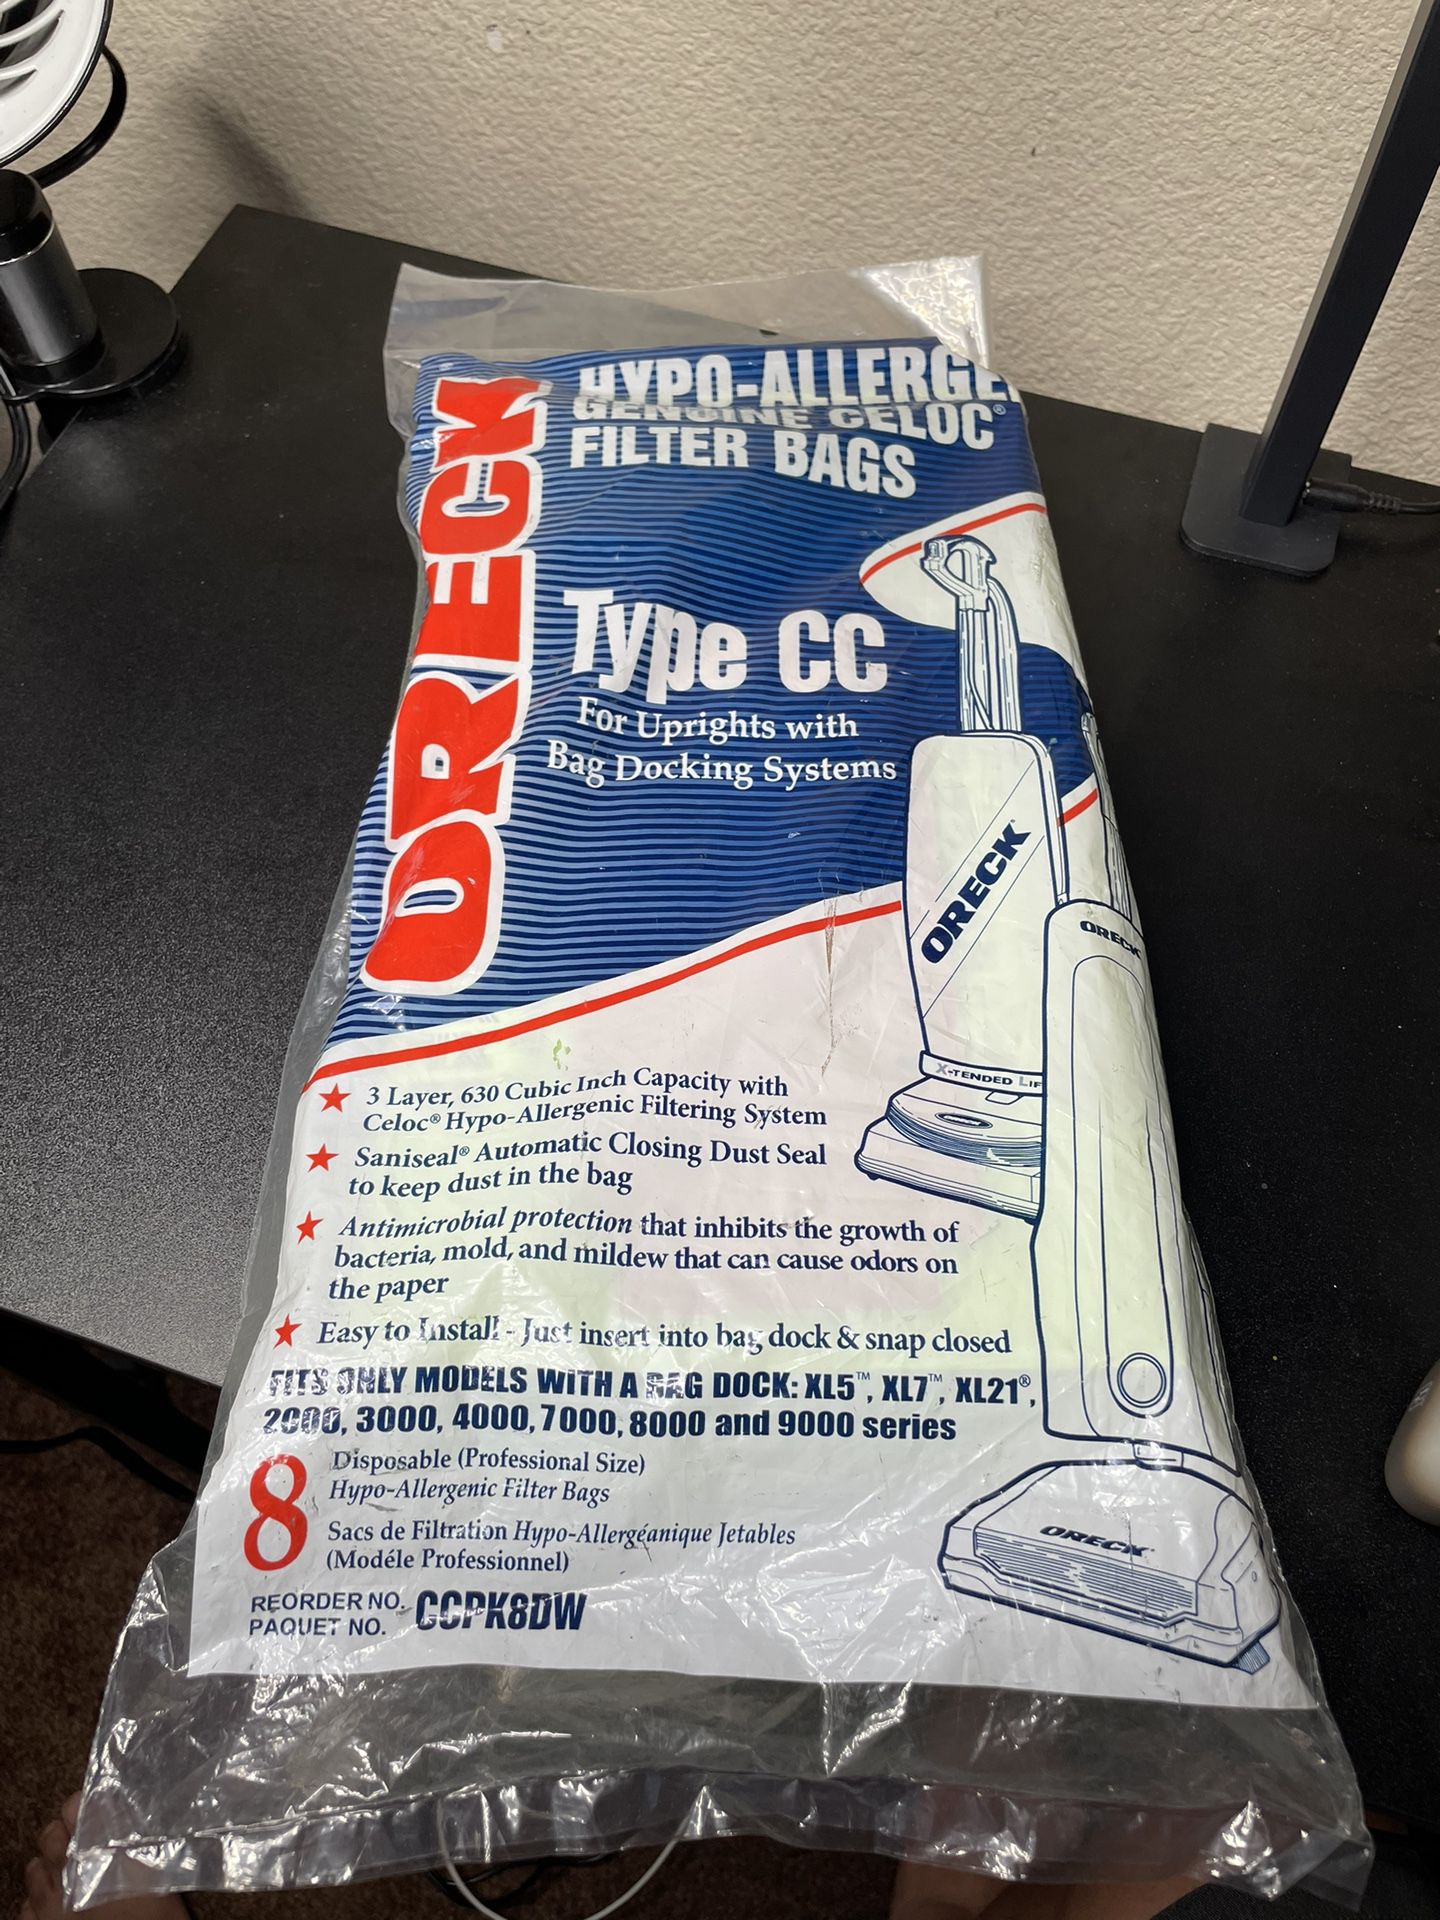 8-Pack Oreck CC Hypo-Allergenic CELOC Vacuum Filter Bags CC - CCPK8DW NEW